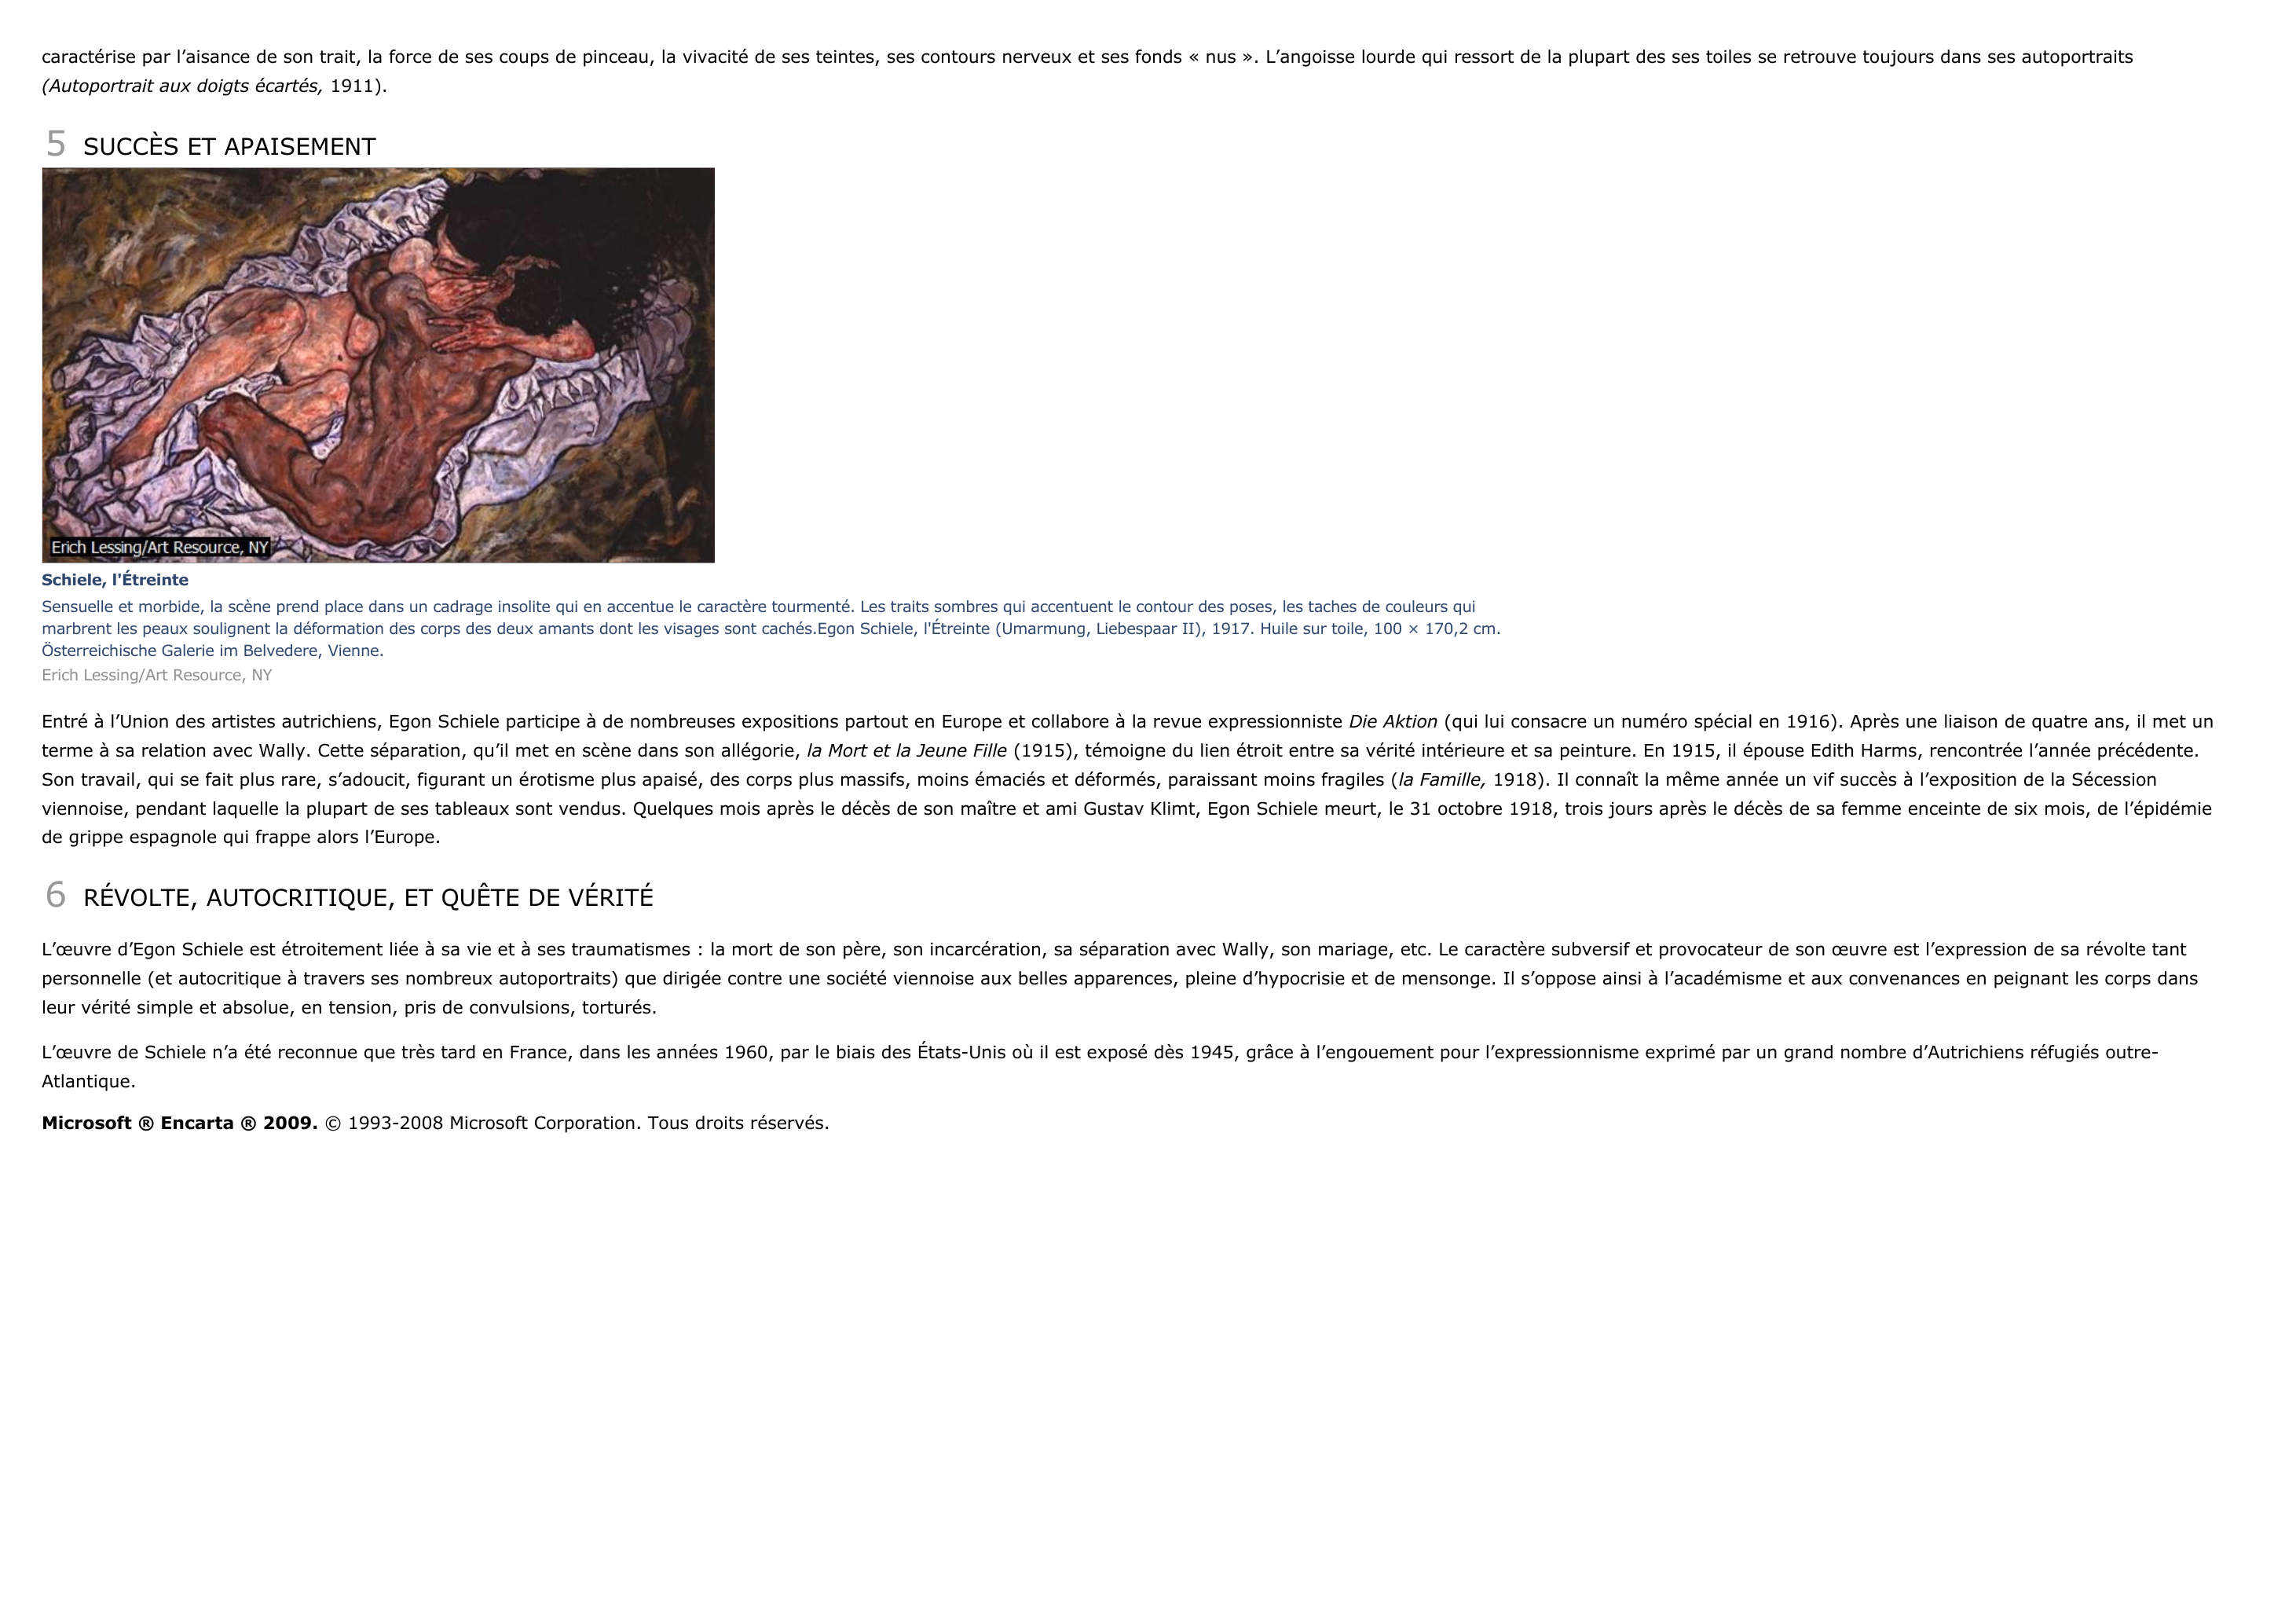 Prévisualisation du document Schiele, Egon - biographie du peintre.